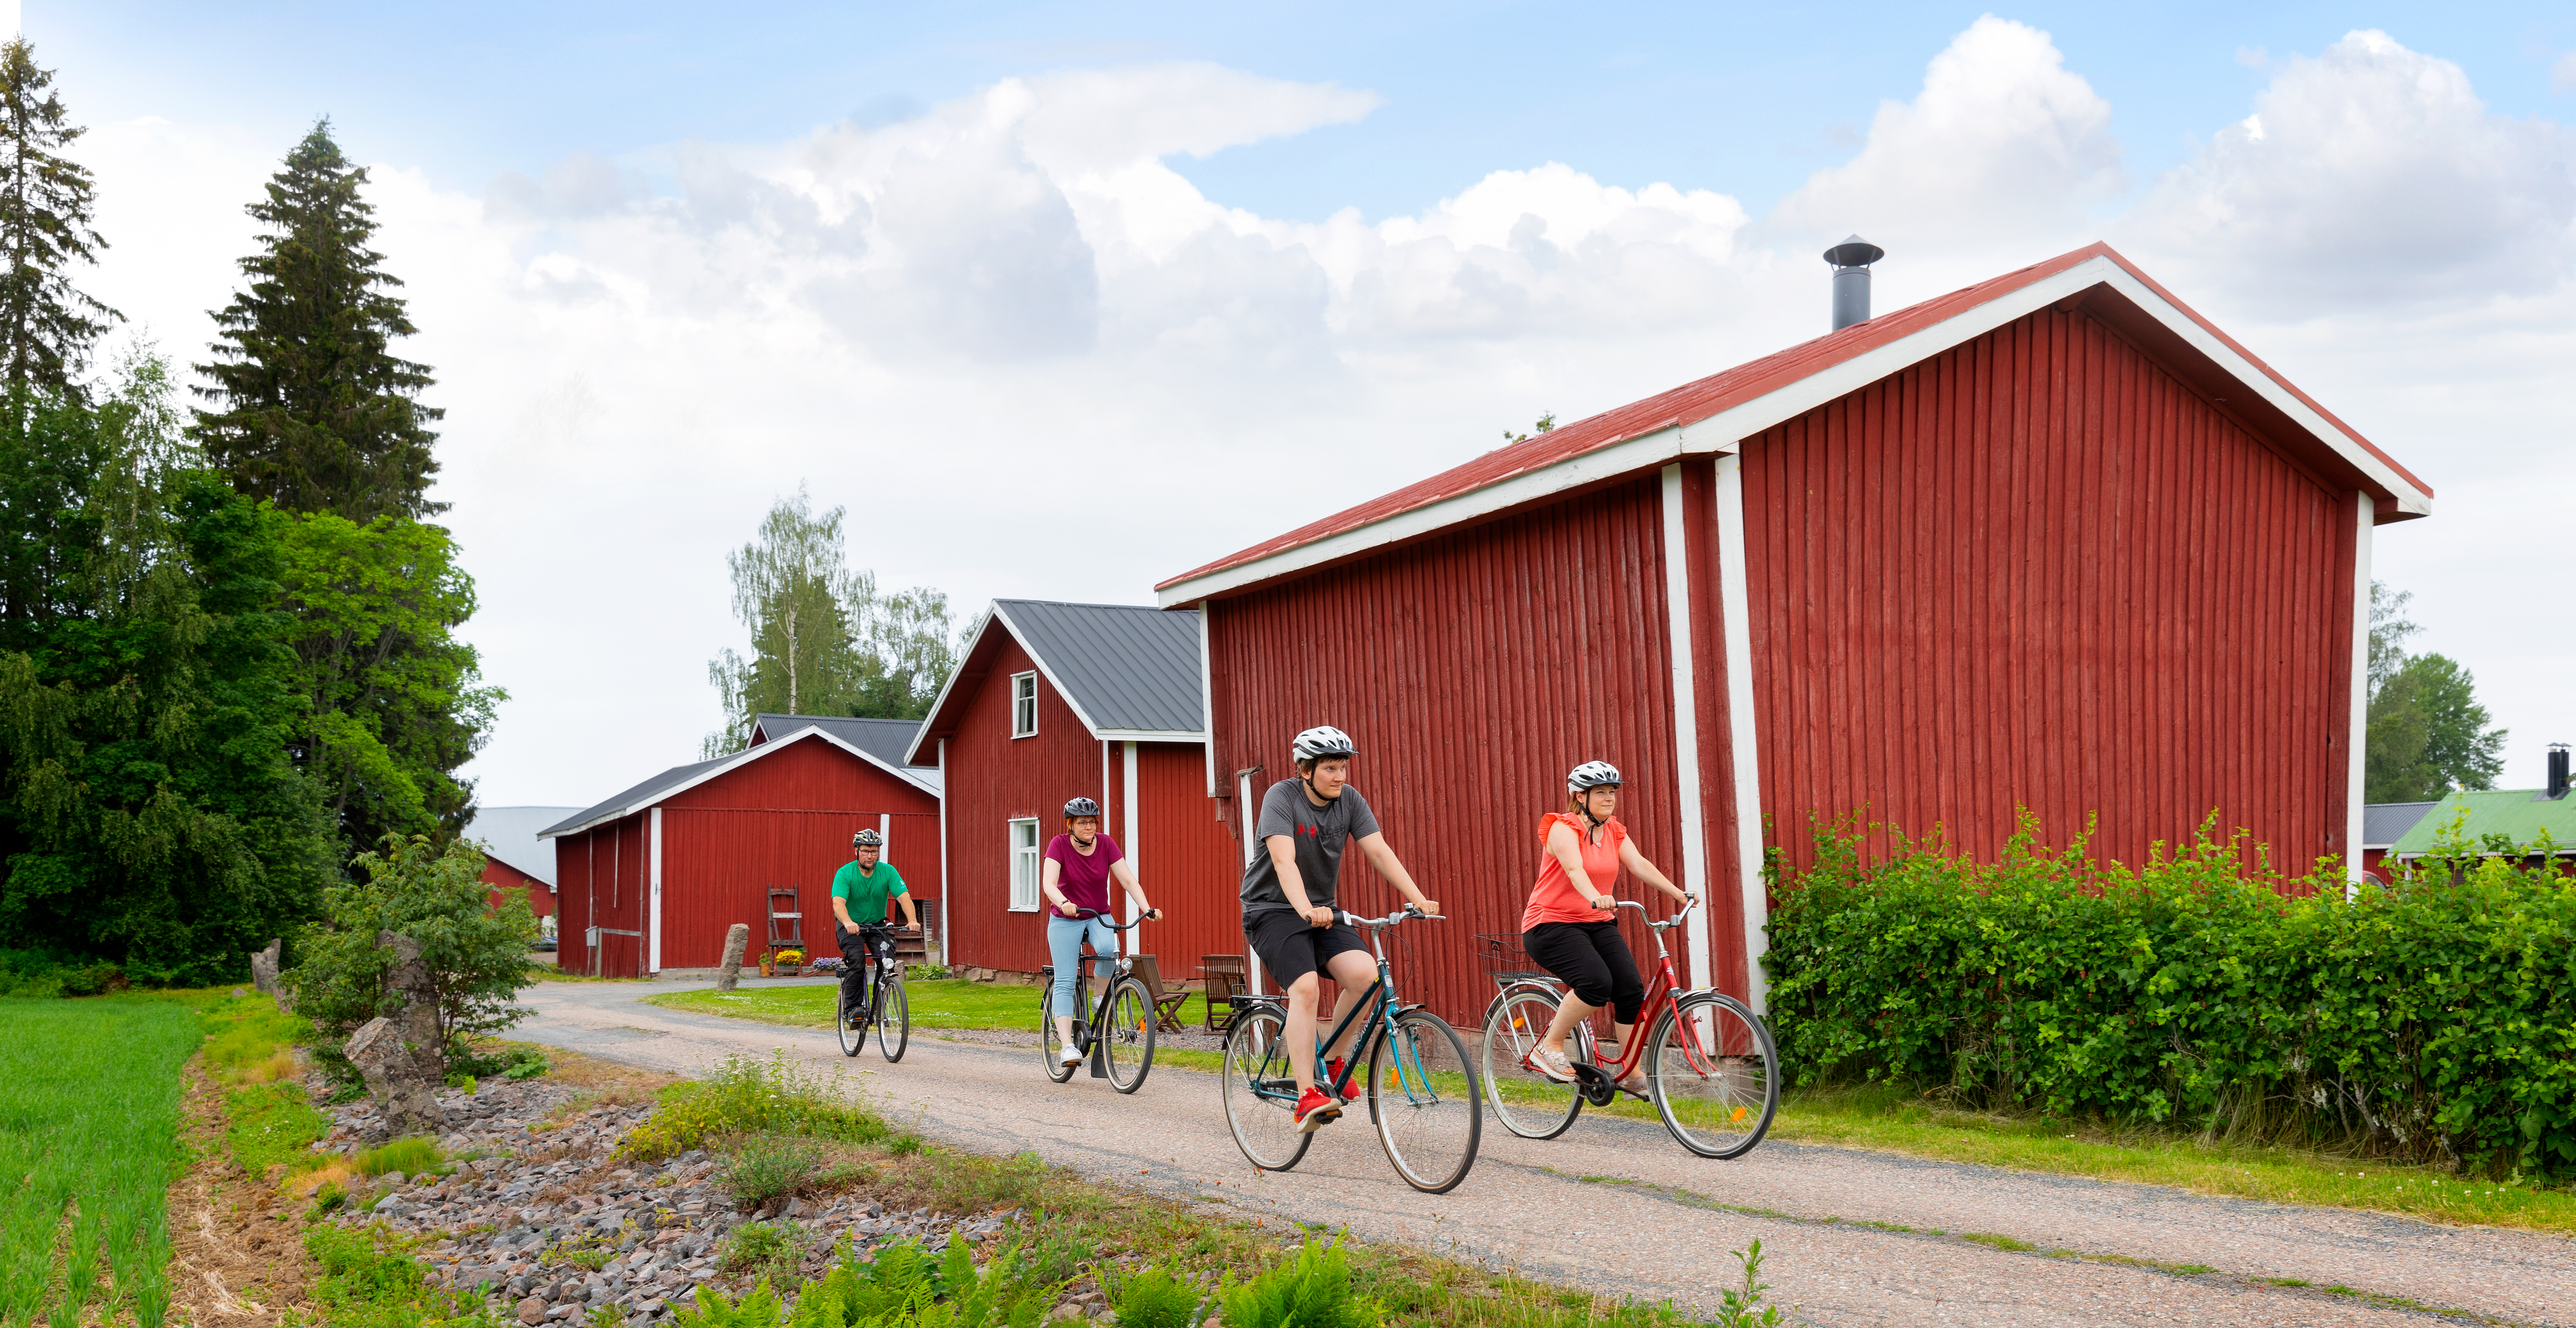 Pyöräilijöitä ja vanhoja raknnuksia Ruokojärven kulttuurimaisemassa aurinkoisena kesäpäivänä